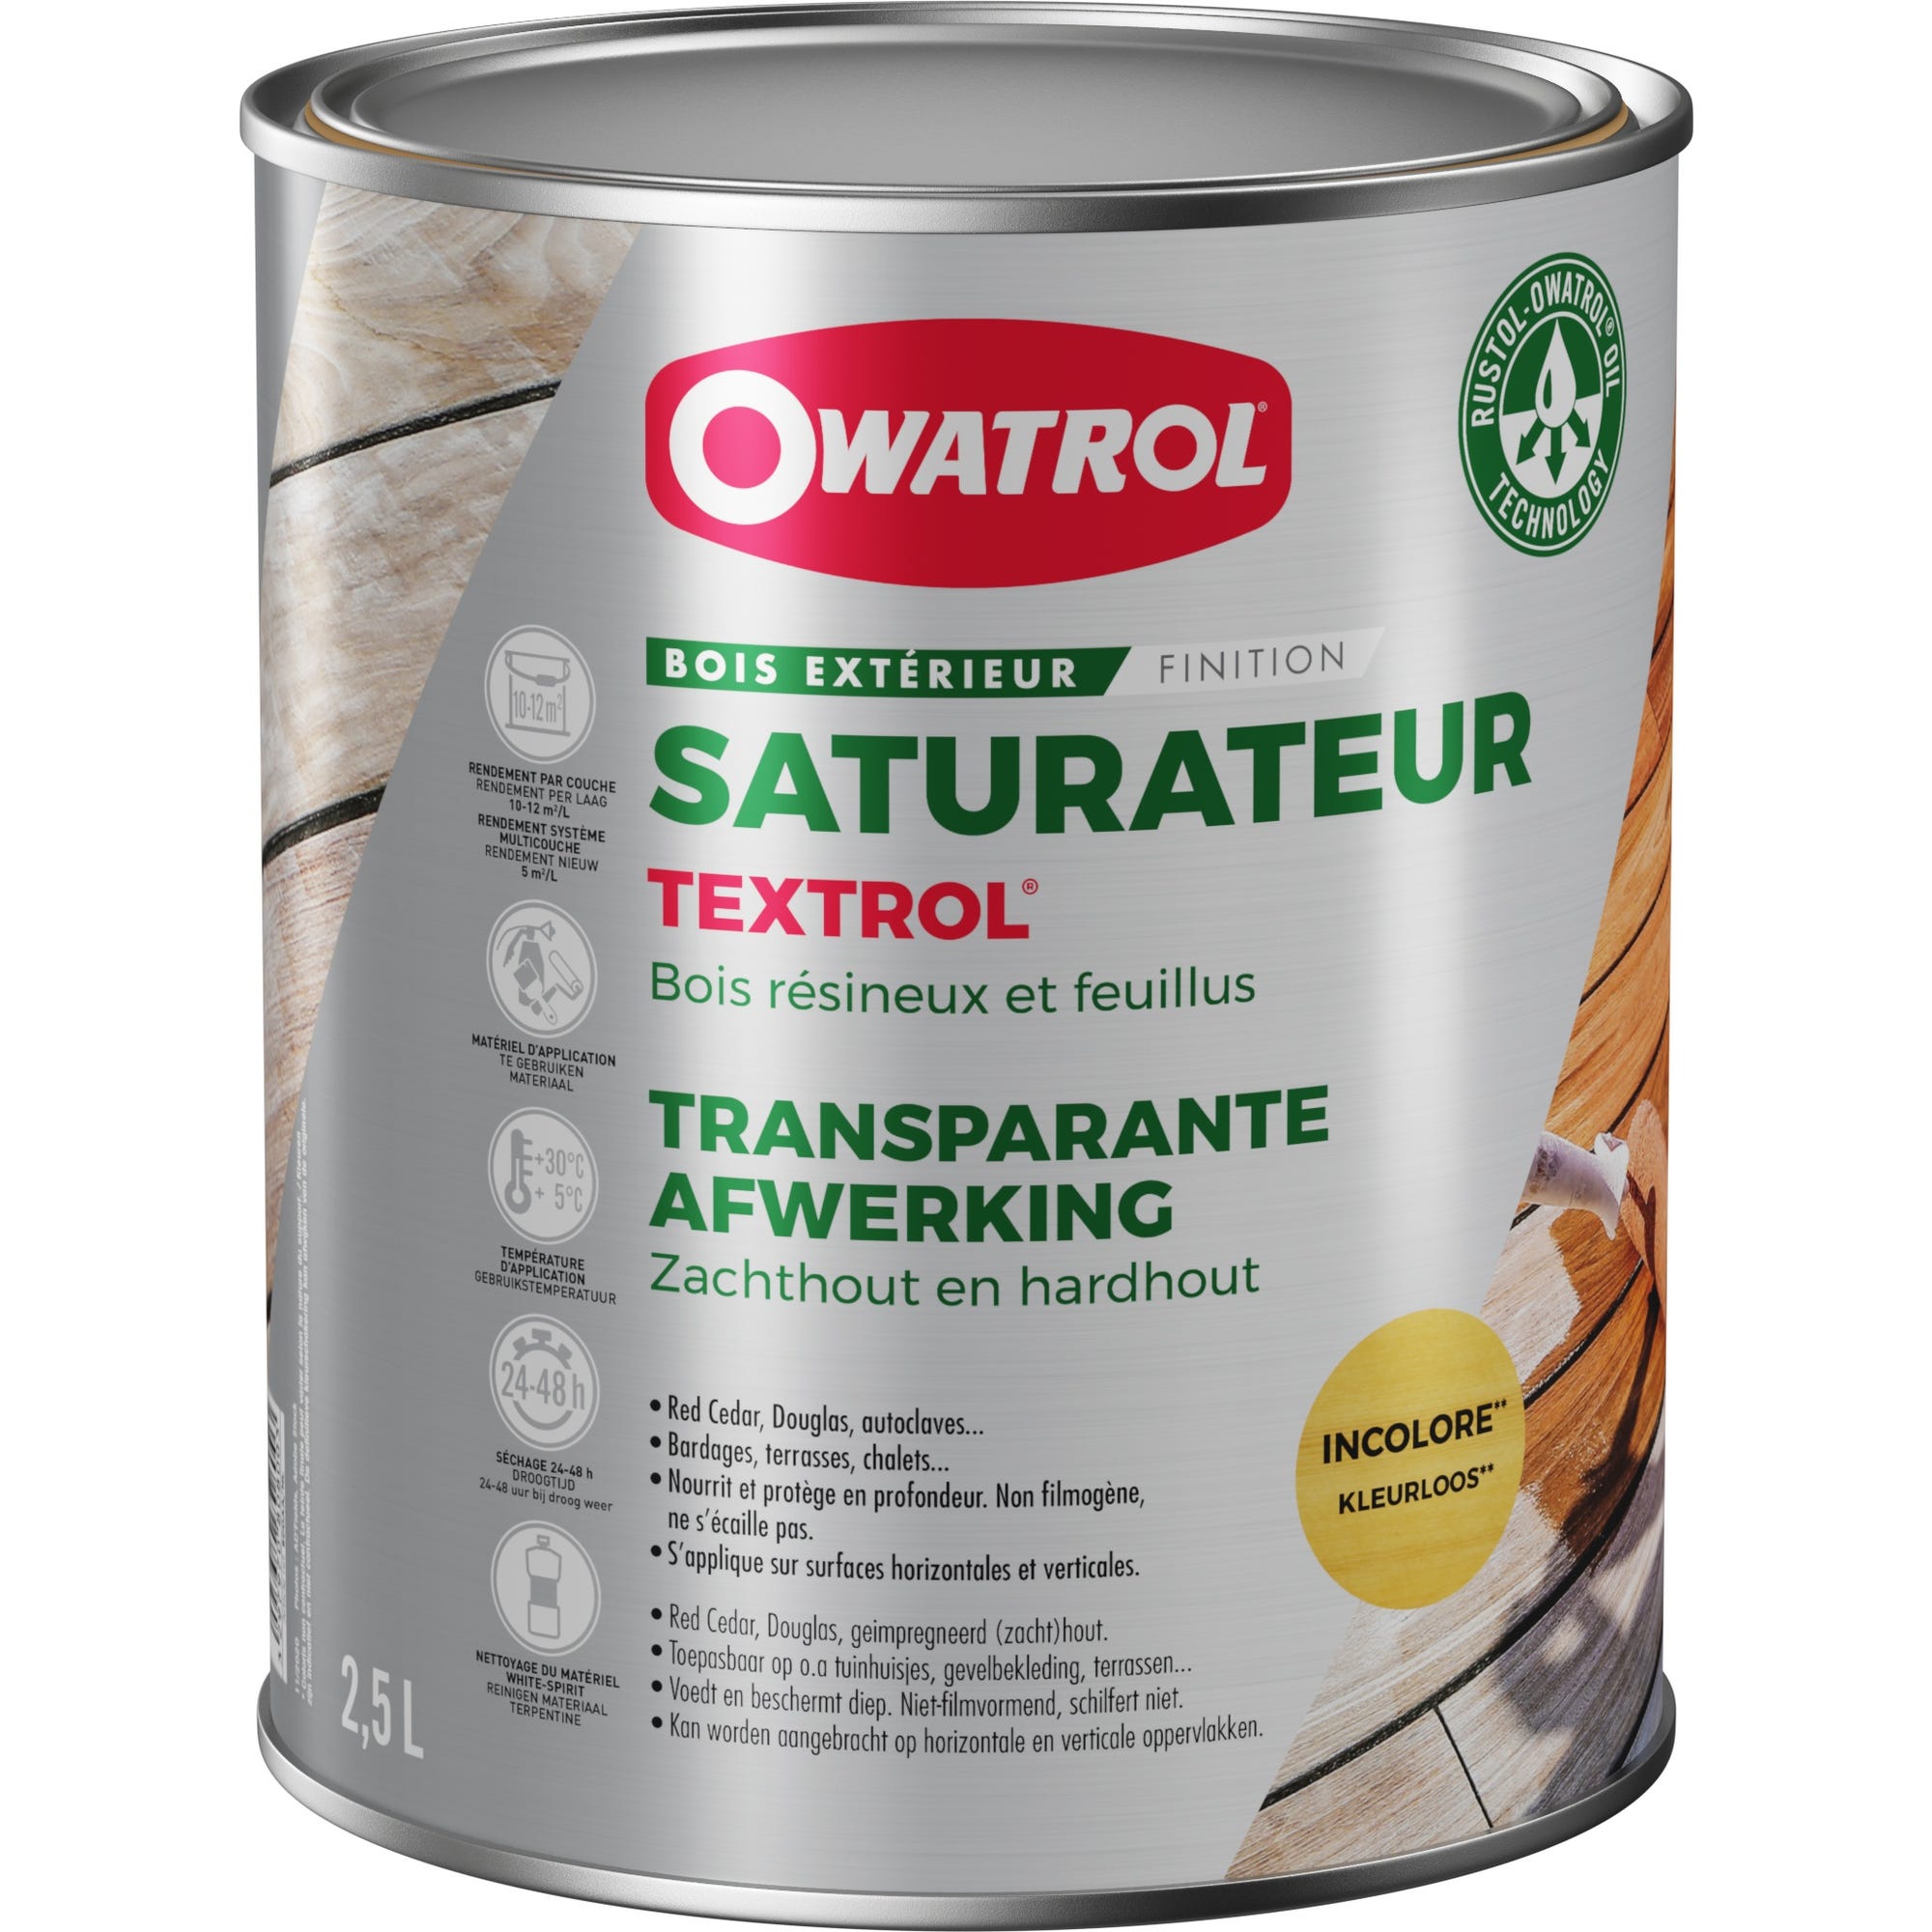 Saturateur extérieur bois résineux / Autoclaves Owatrol TEXTROL Incolore (ow20) 2.5 litres 0